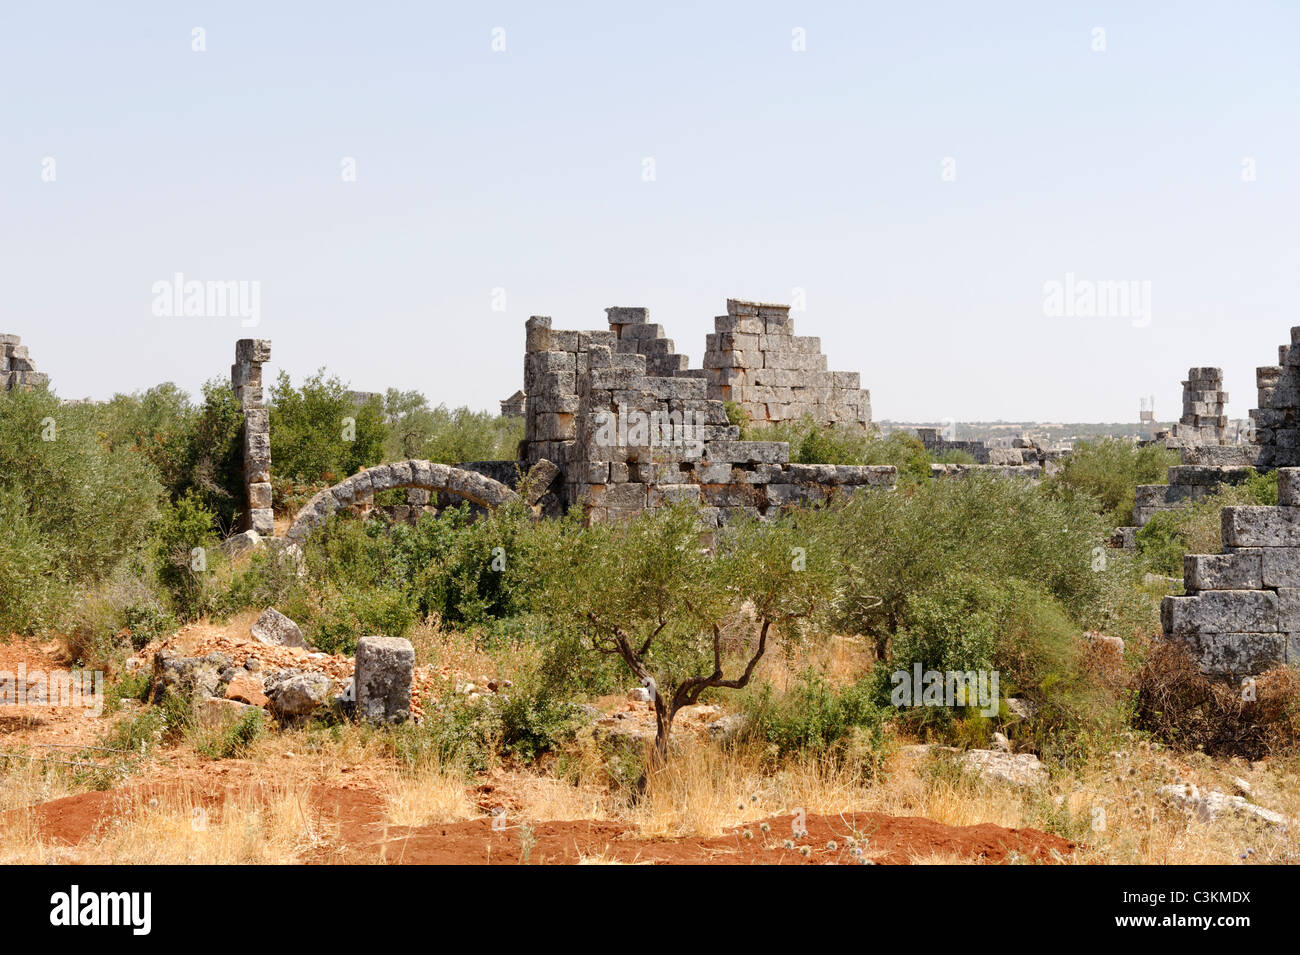 Entre huertos y olivares son los restos de la piedra extensa ciudad muerta bizantino de Bara en el noreste de Siria. Foto de stock